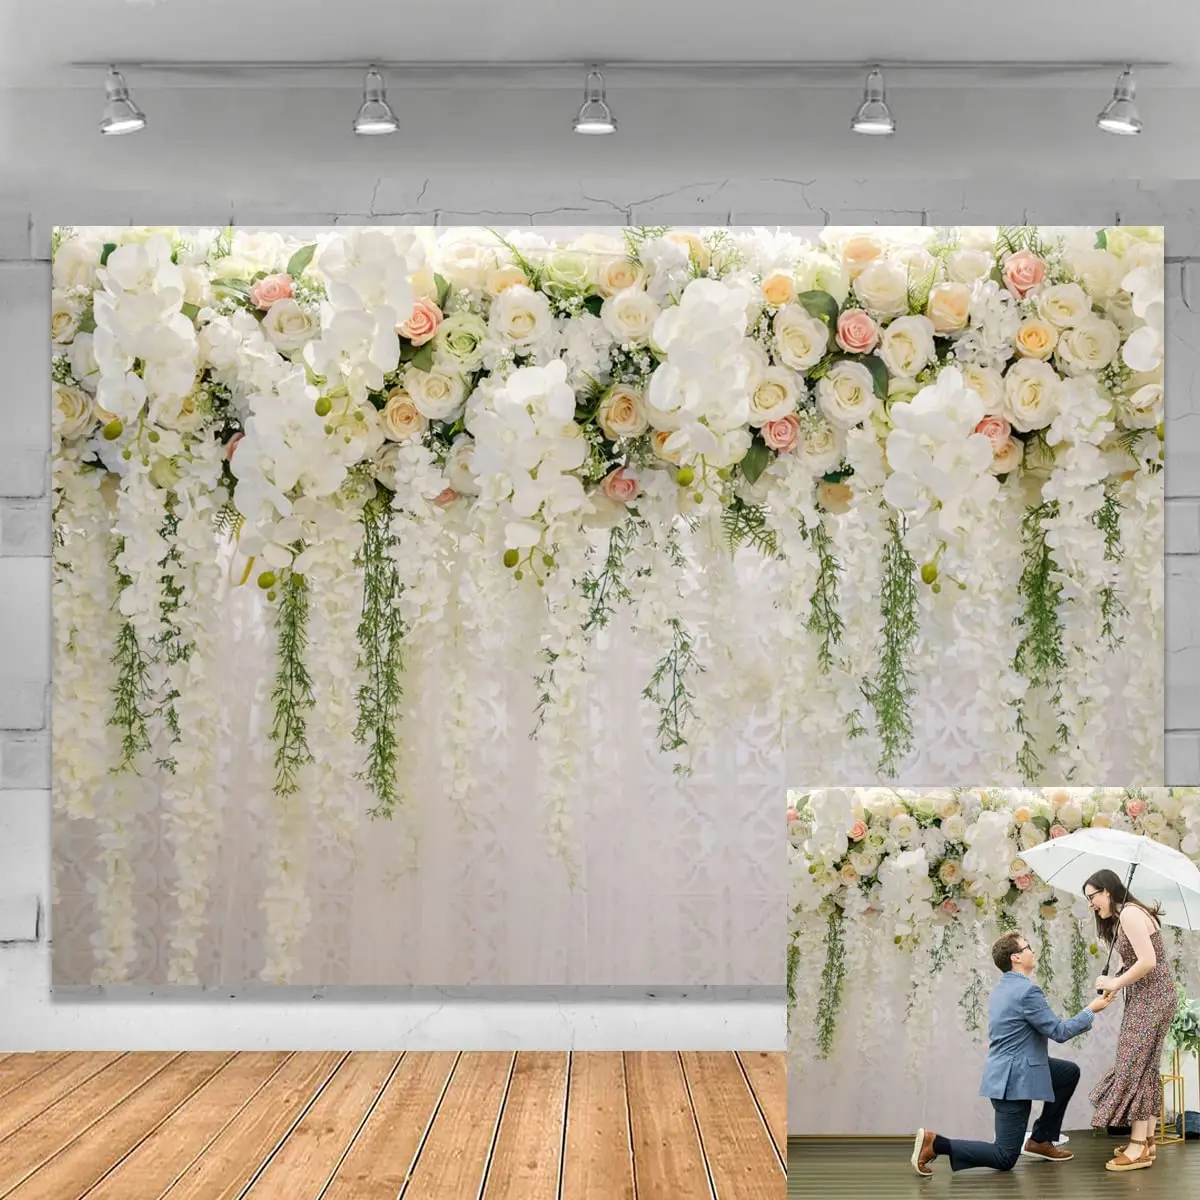 Backdrop hoa sẽ là một lựa chọn tuyệt vời để tạo ra bầu không khí tráng lệ và sang trọng cho không gian tiệc cưới của bạn. Hình ảnh liên quan đến từ khóa \